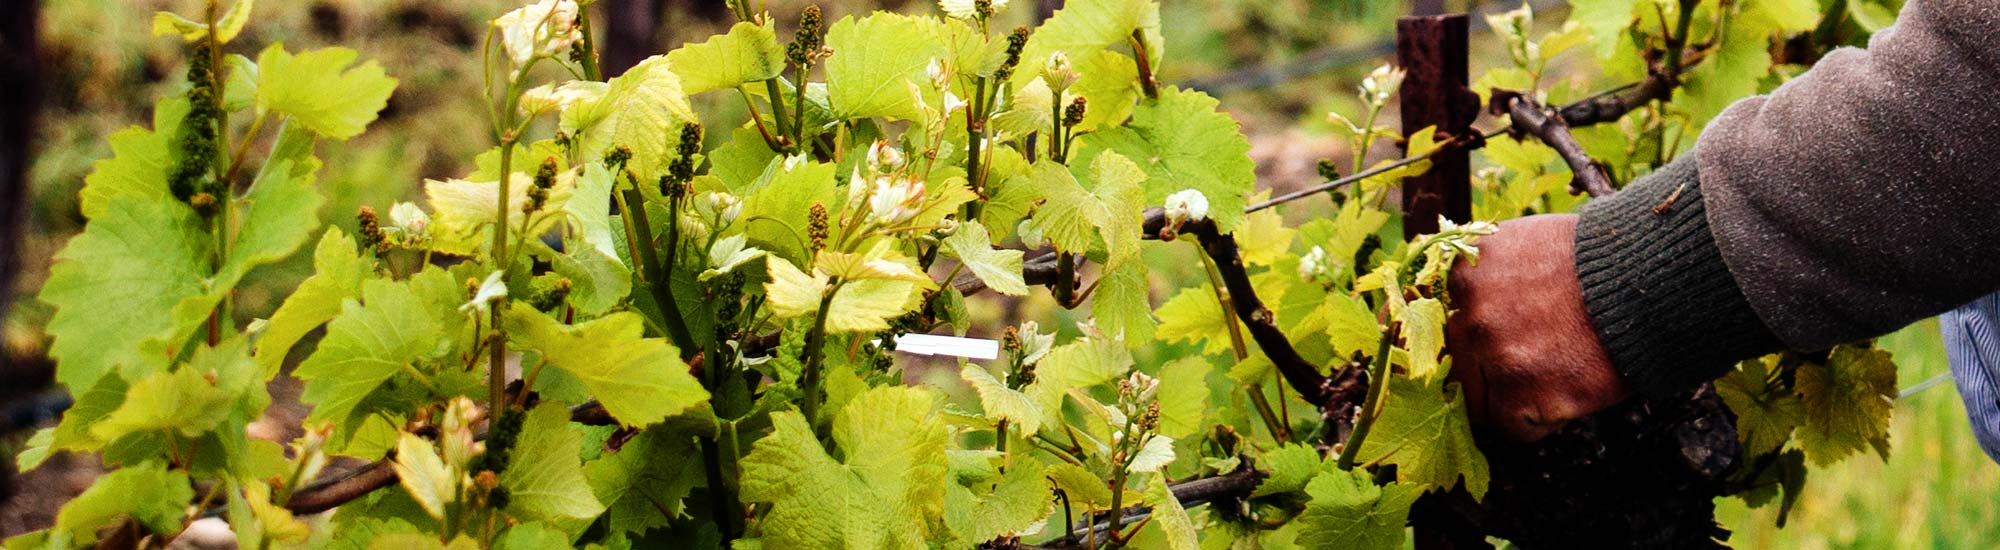 Sustainable Wine Tasting on the San Luis Obispo Coast